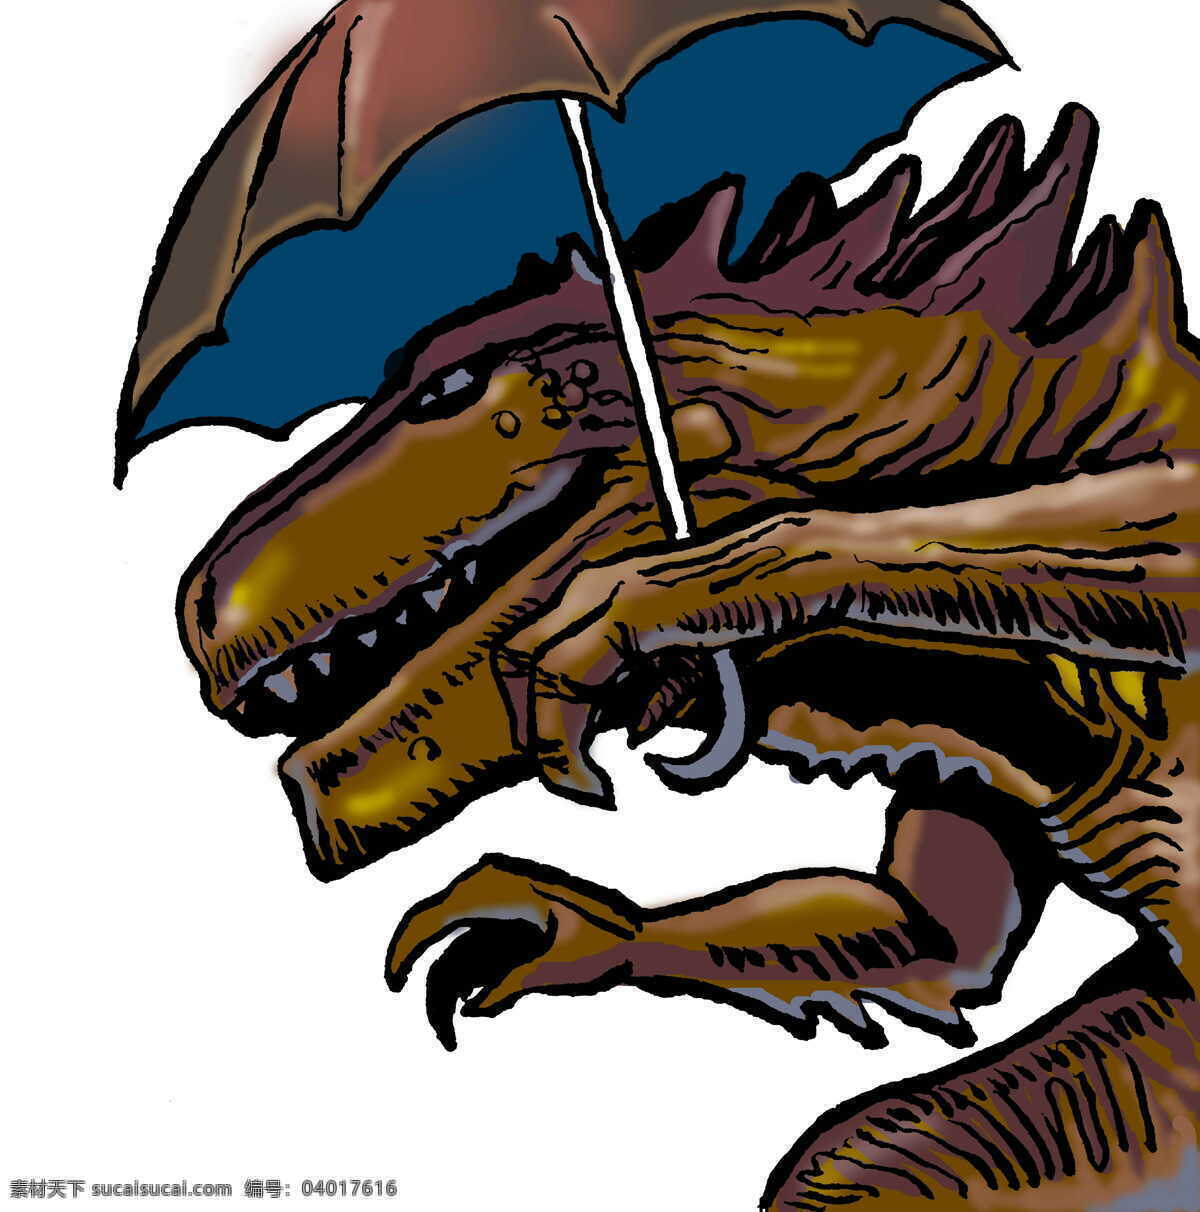 动漫 插画 创意 动漫插画 动漫动画 恐龙 漫画 设计素材 模板下载 雨伞 插画集